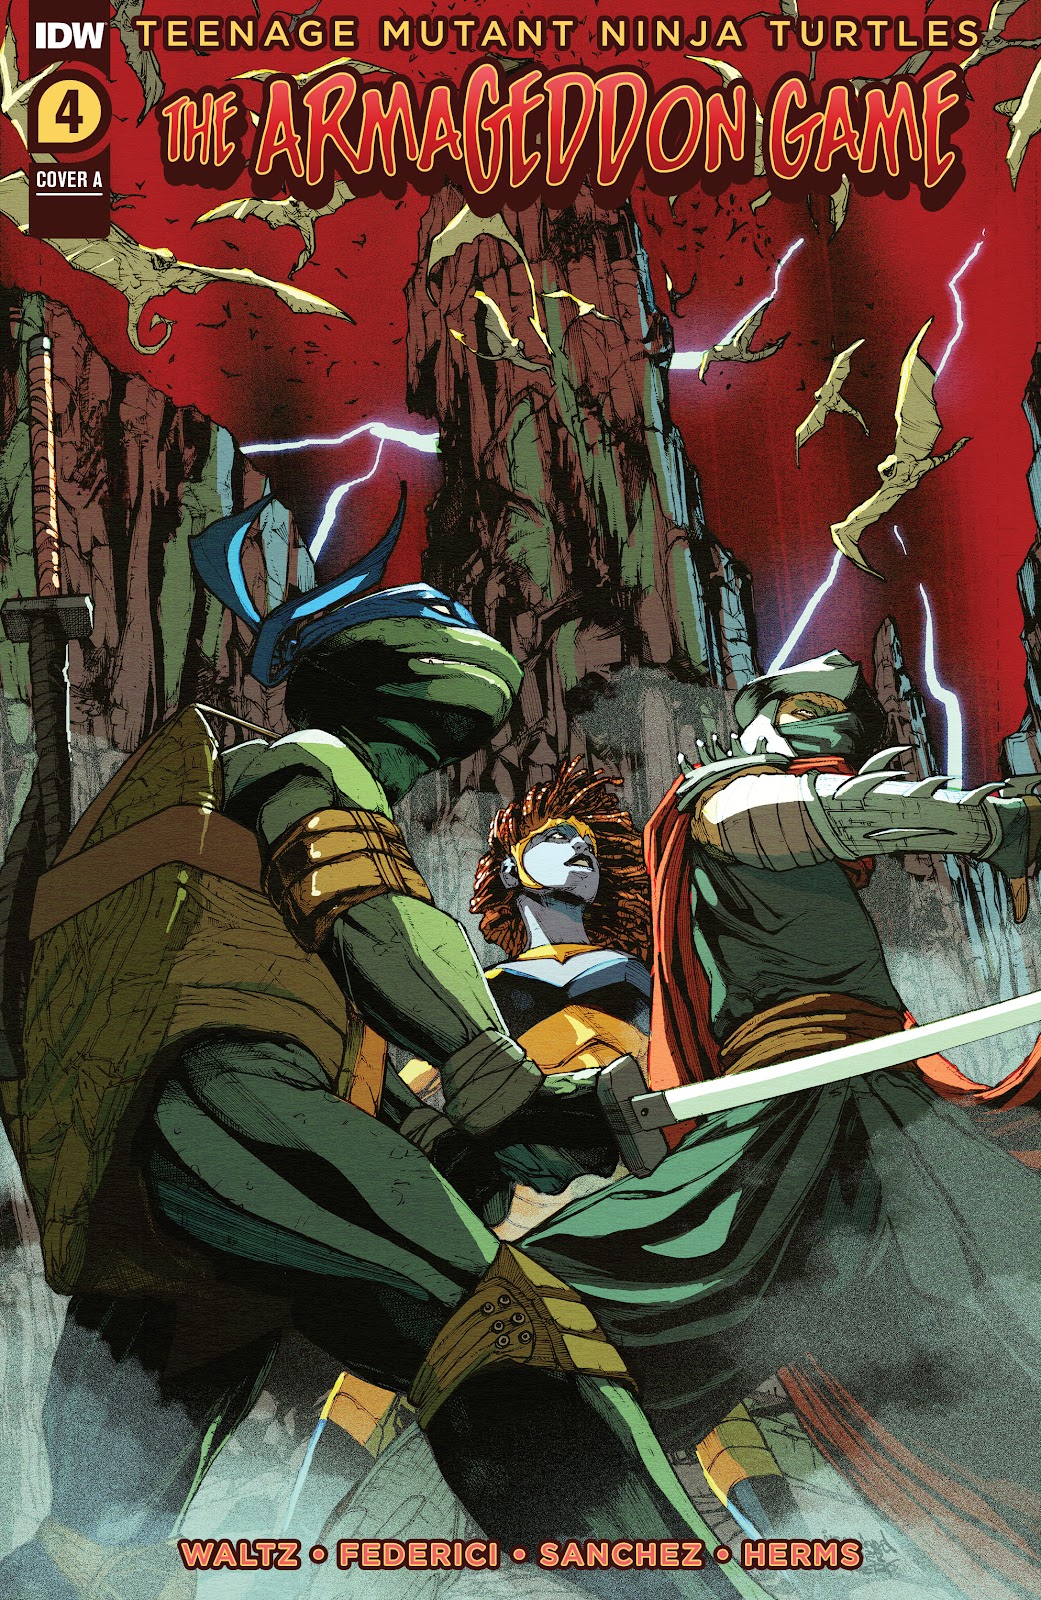 Teenage Mutant Ninja Turtles: The Armageddon Game issue 4 - Page 1